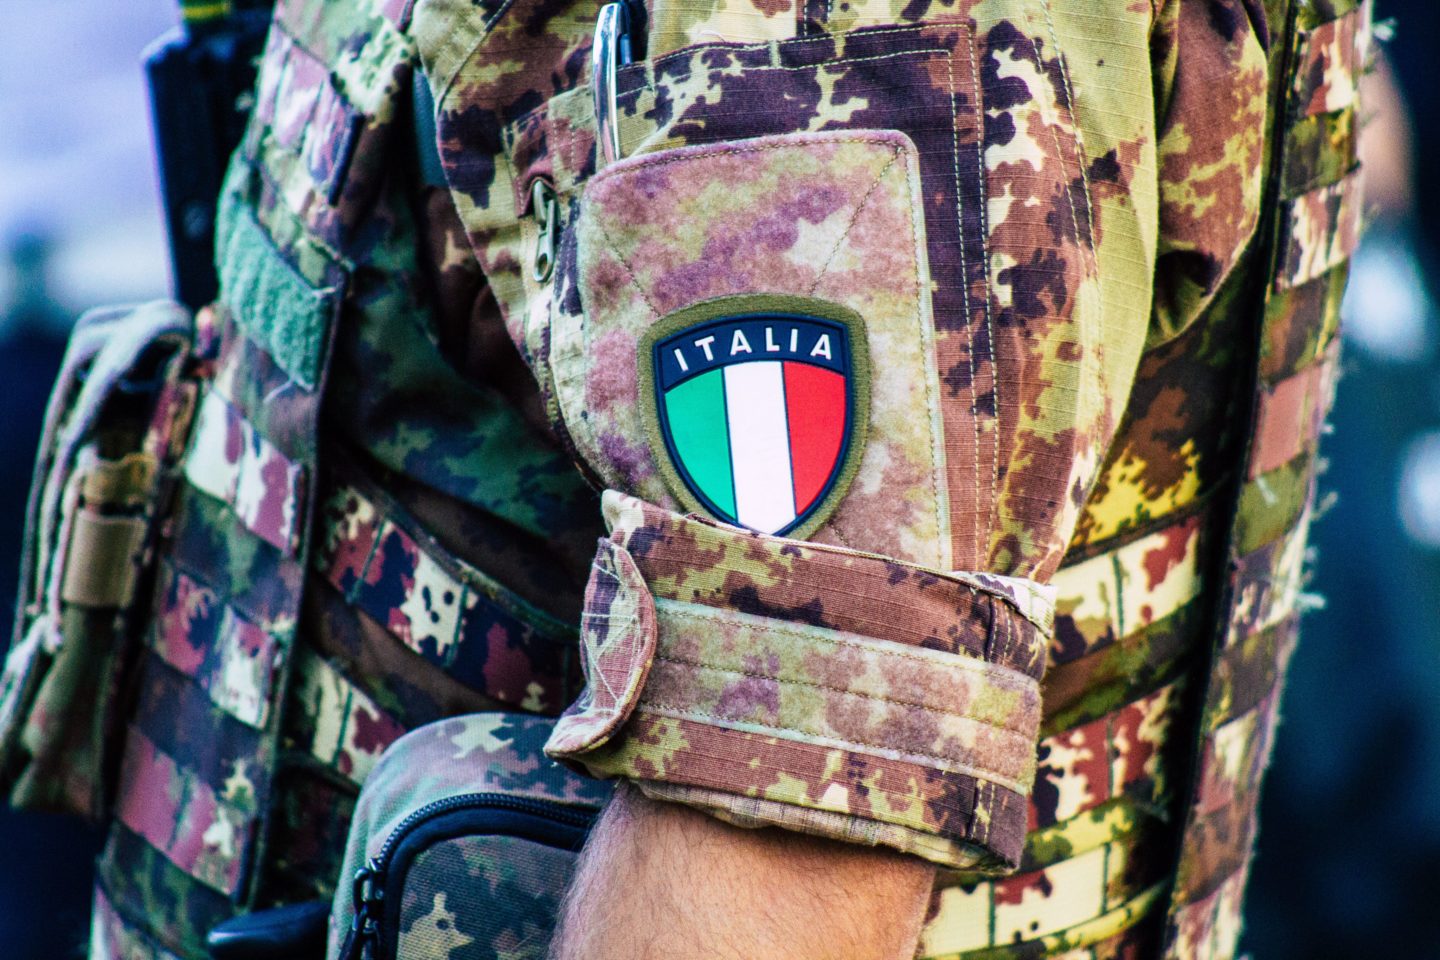 Misija italijanske vojske: Proizvesti več konoplje